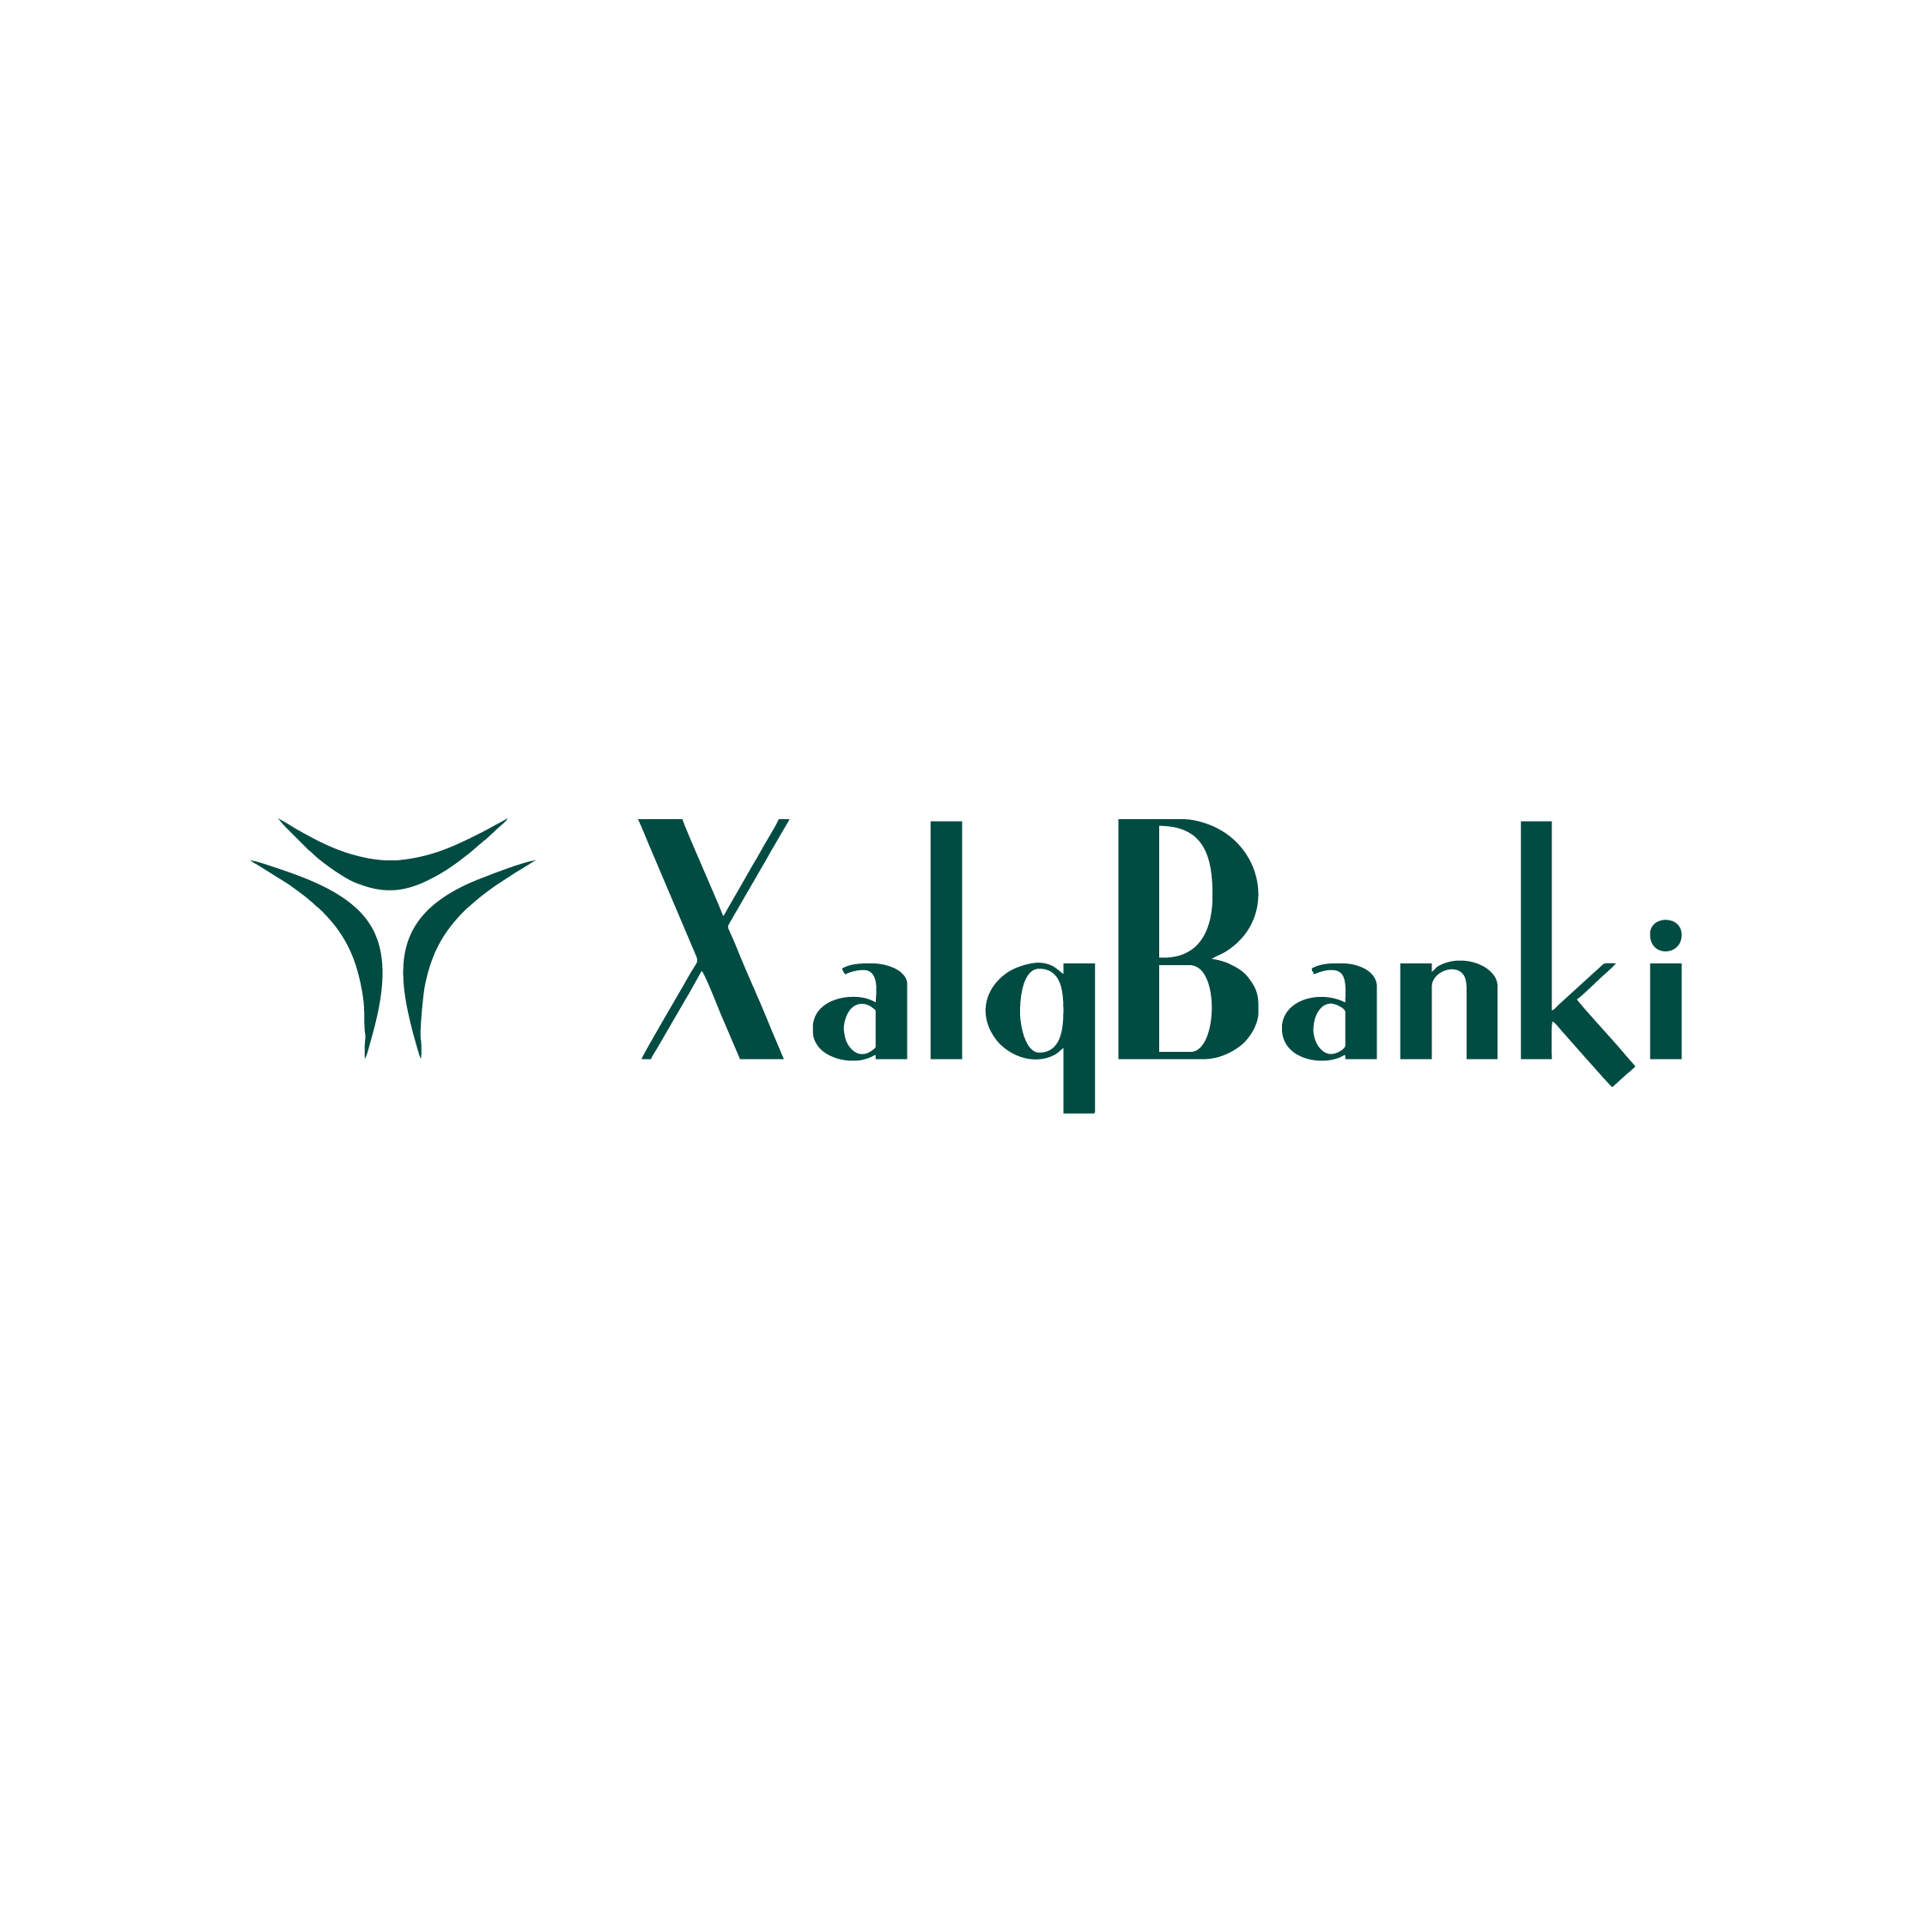 Сайт халк банка узбекистана. Халқ банки лого. Xalq Bank Uzbekistan. Халк банк. Халк банки логотипы.